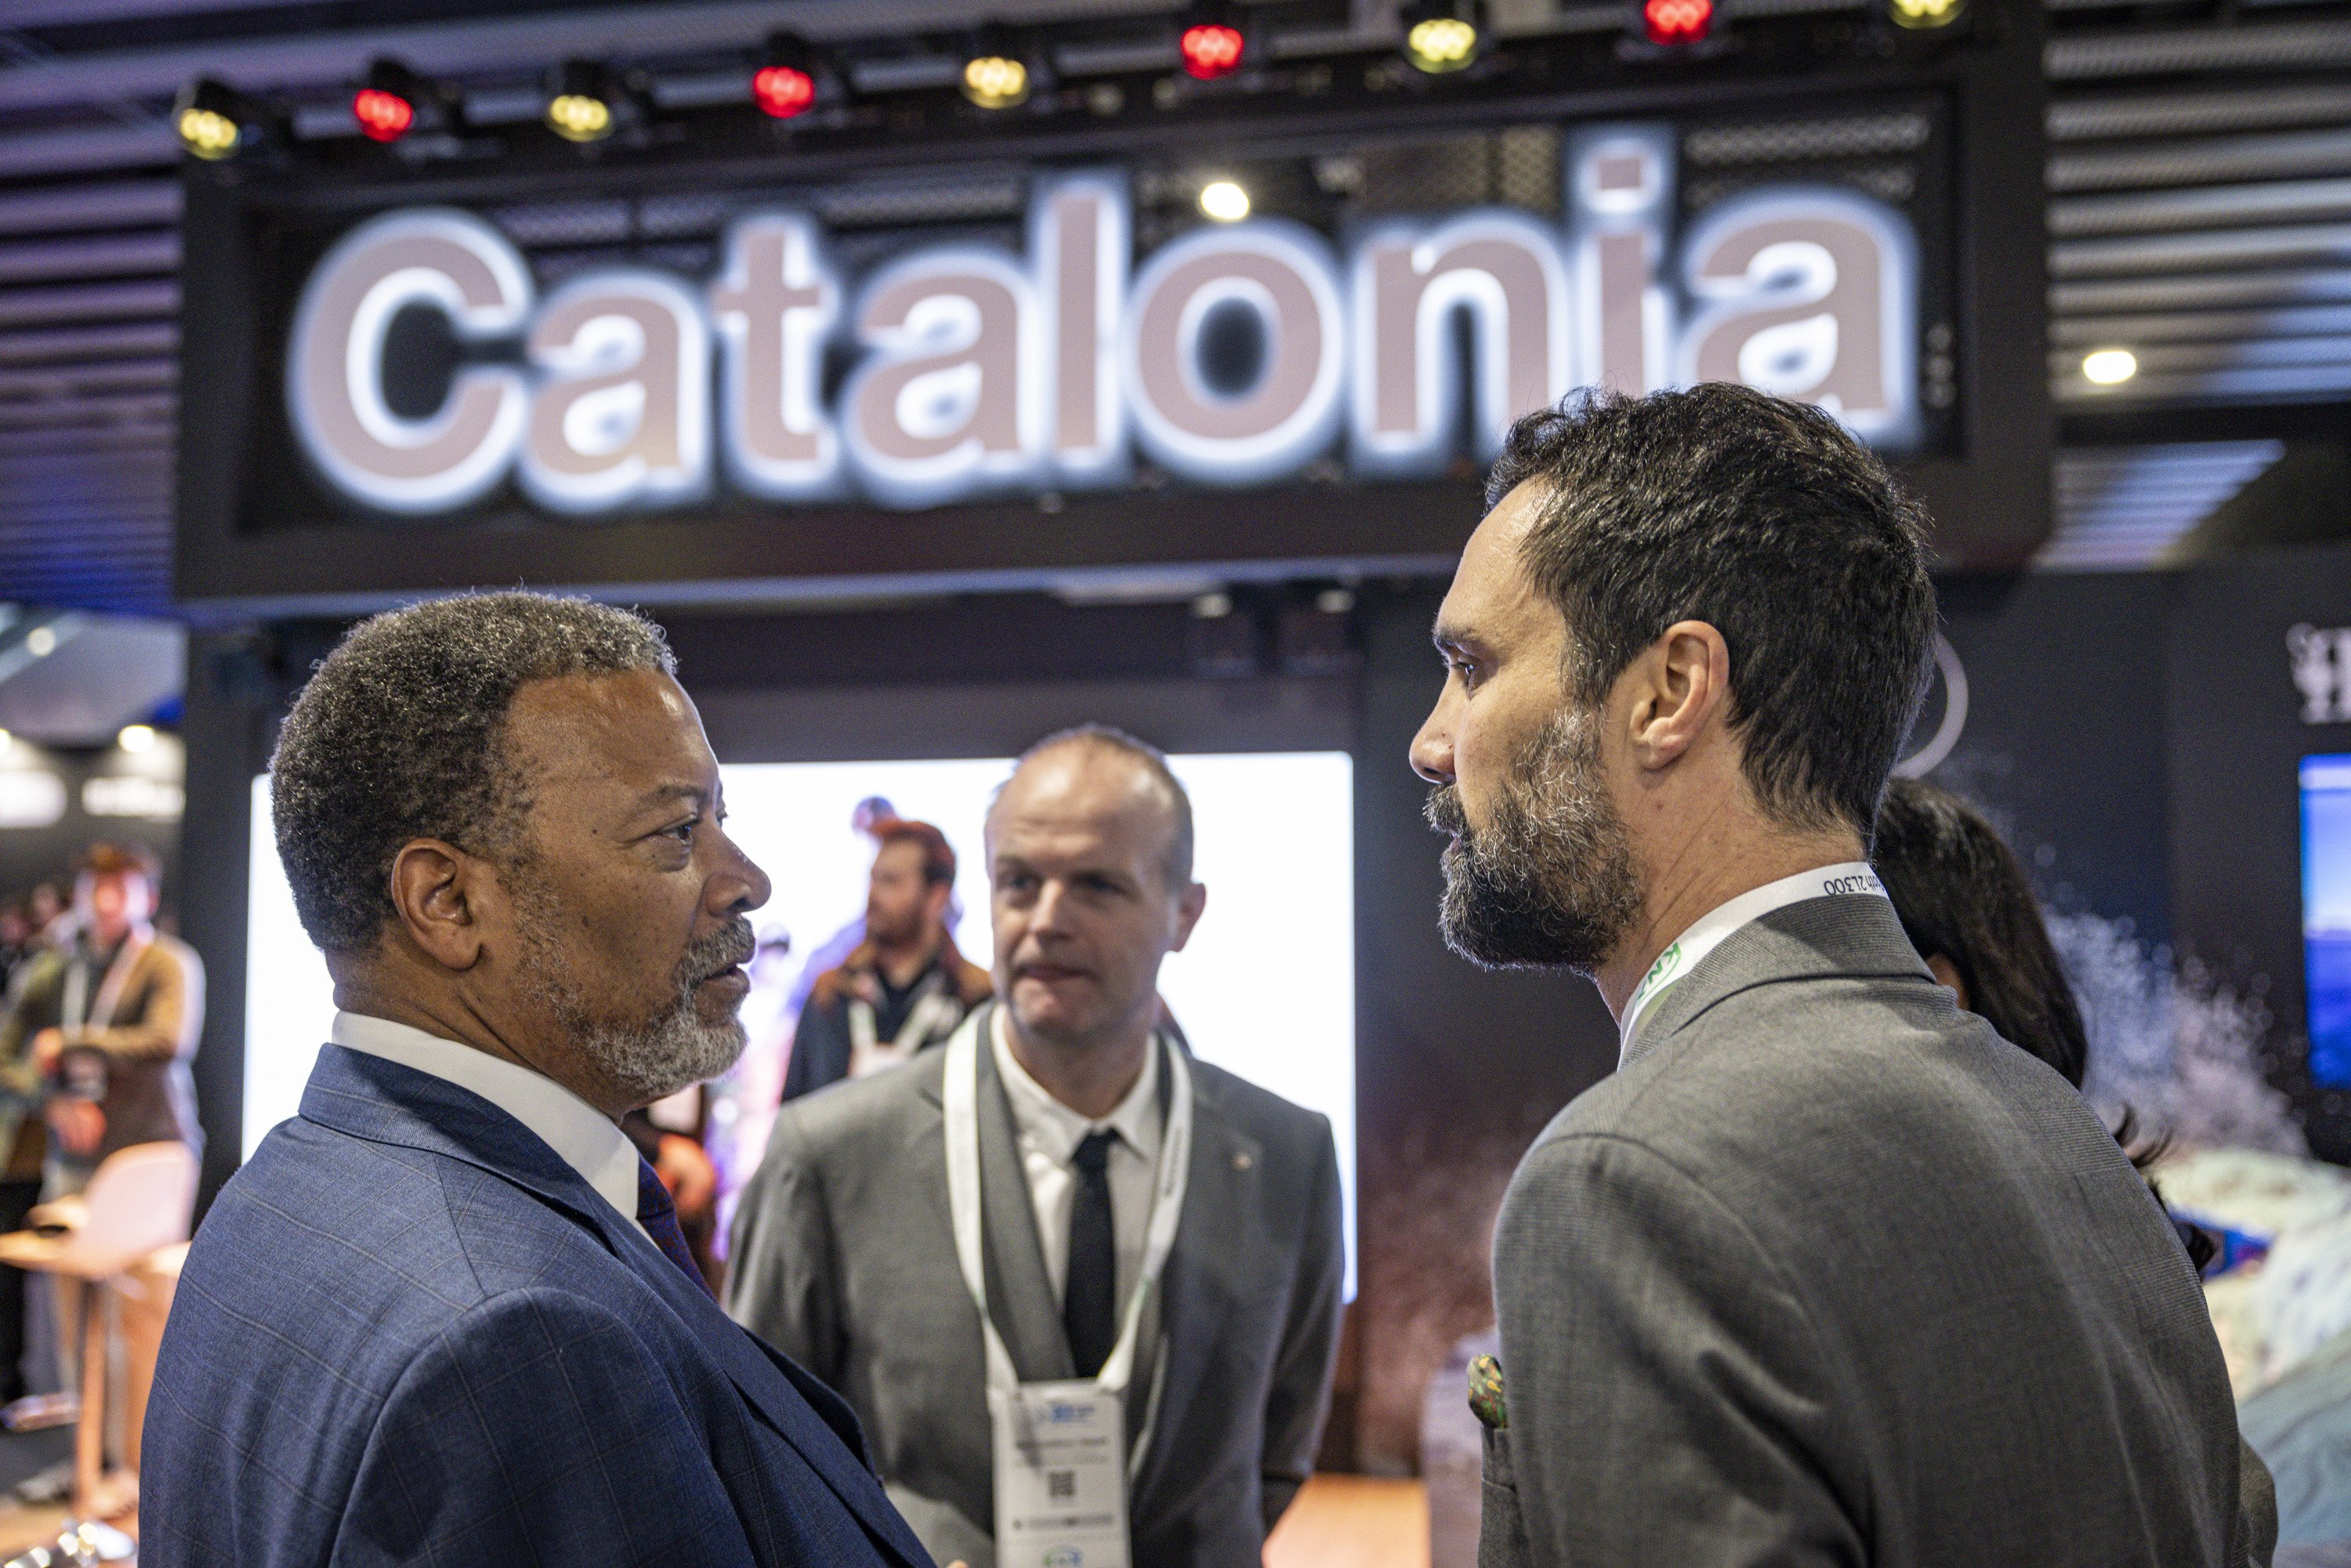 El sector audiovisual creix un 7% a Catalunya i genera més de 7.500 milions d’euros